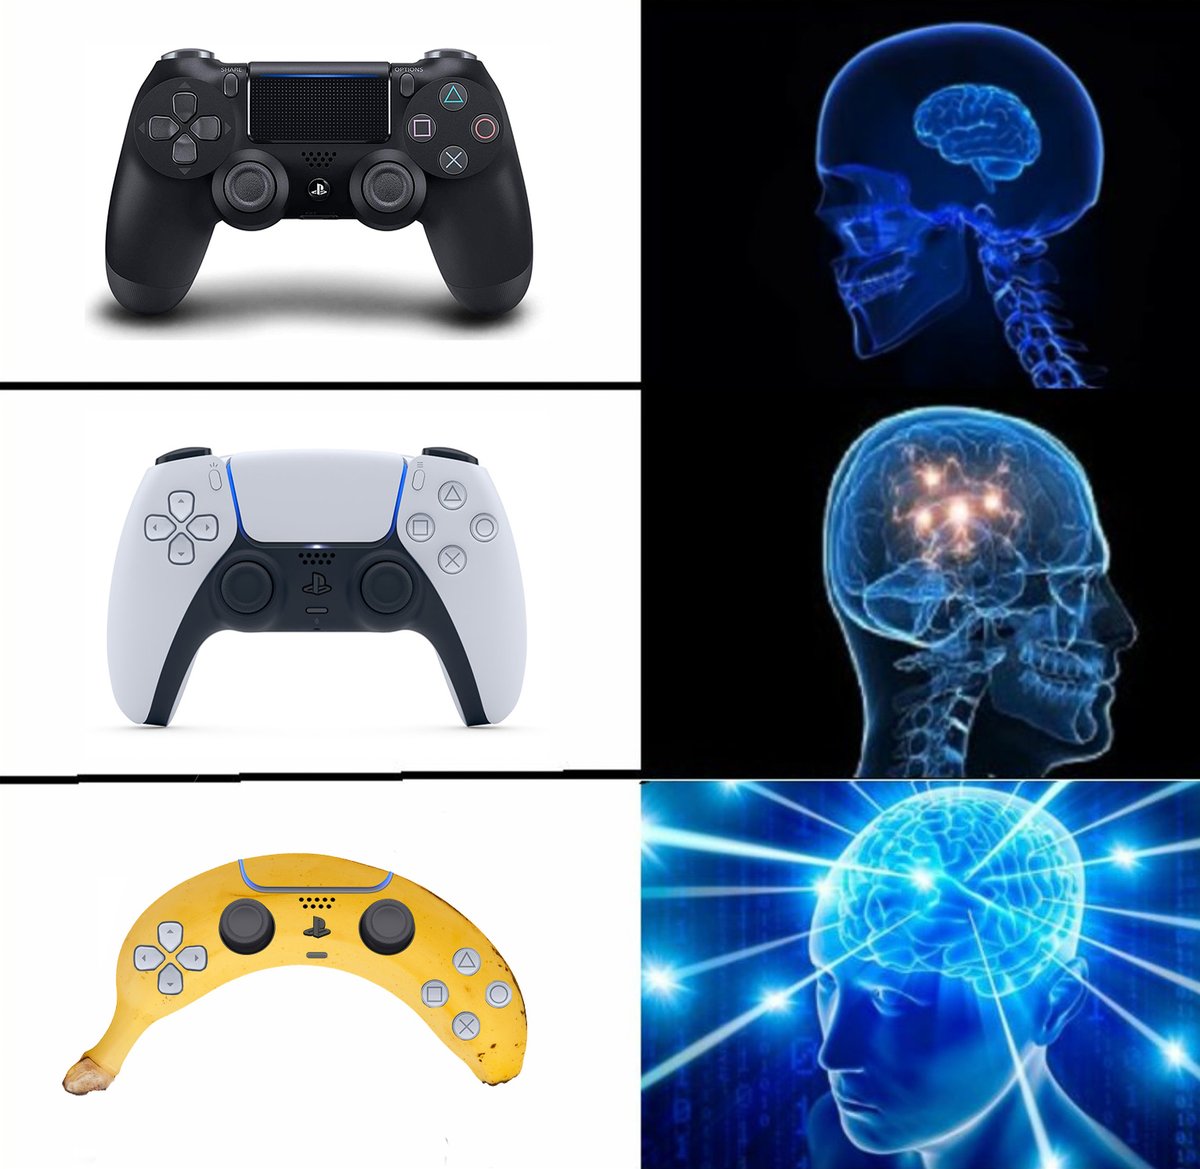 playstation banana controller memes